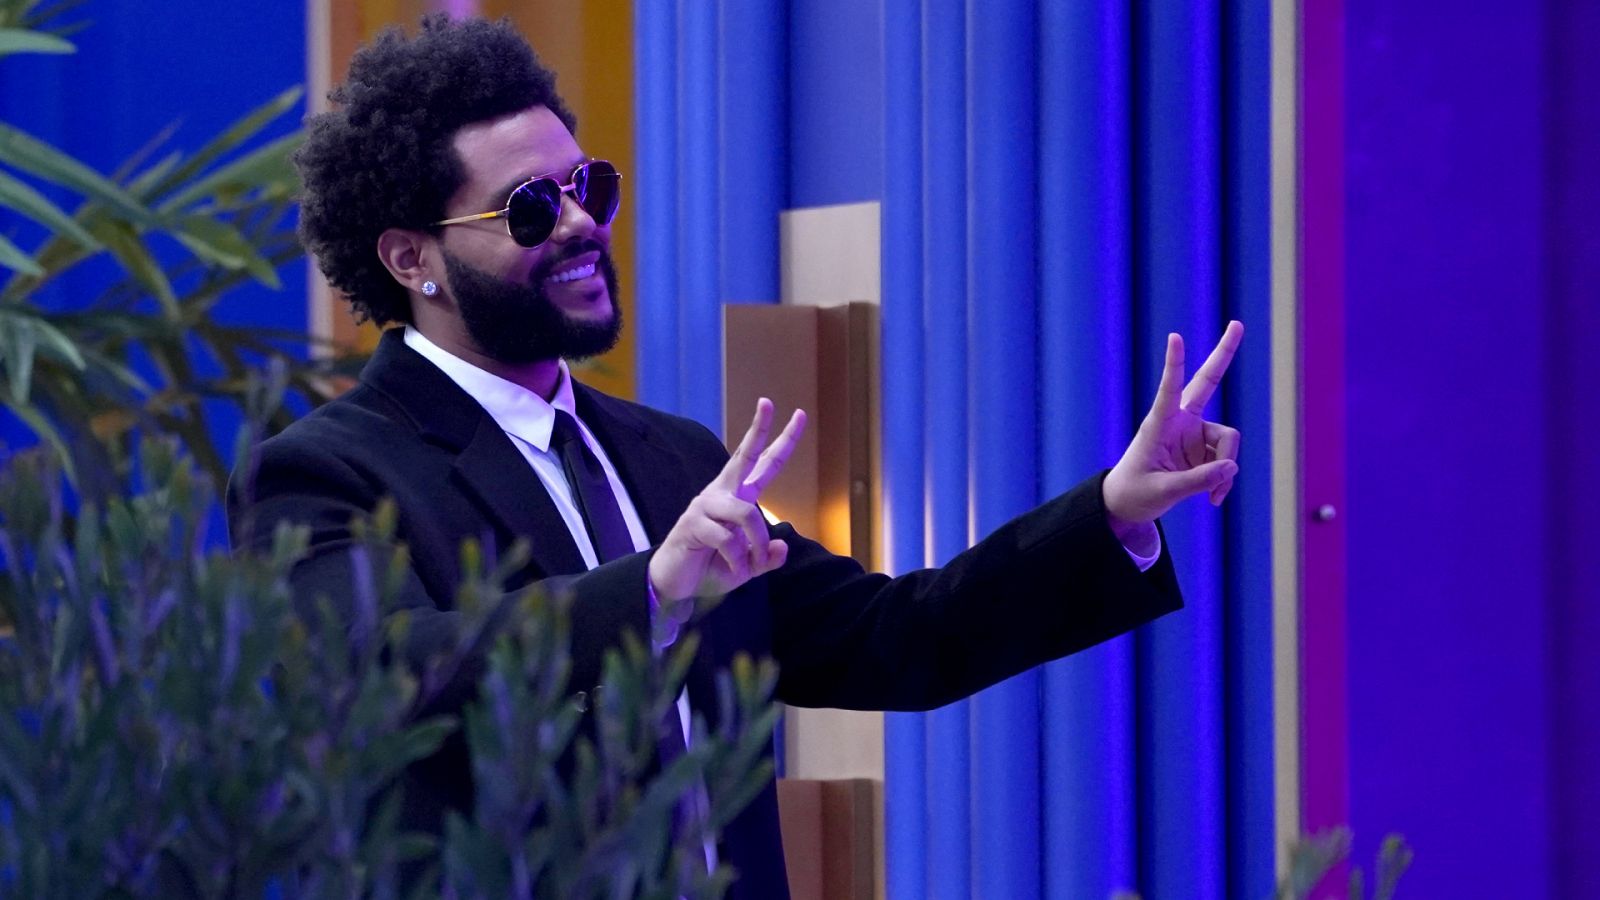  The Weeknd resetea sus redes sociales y anuncia nuevo proyecto musical